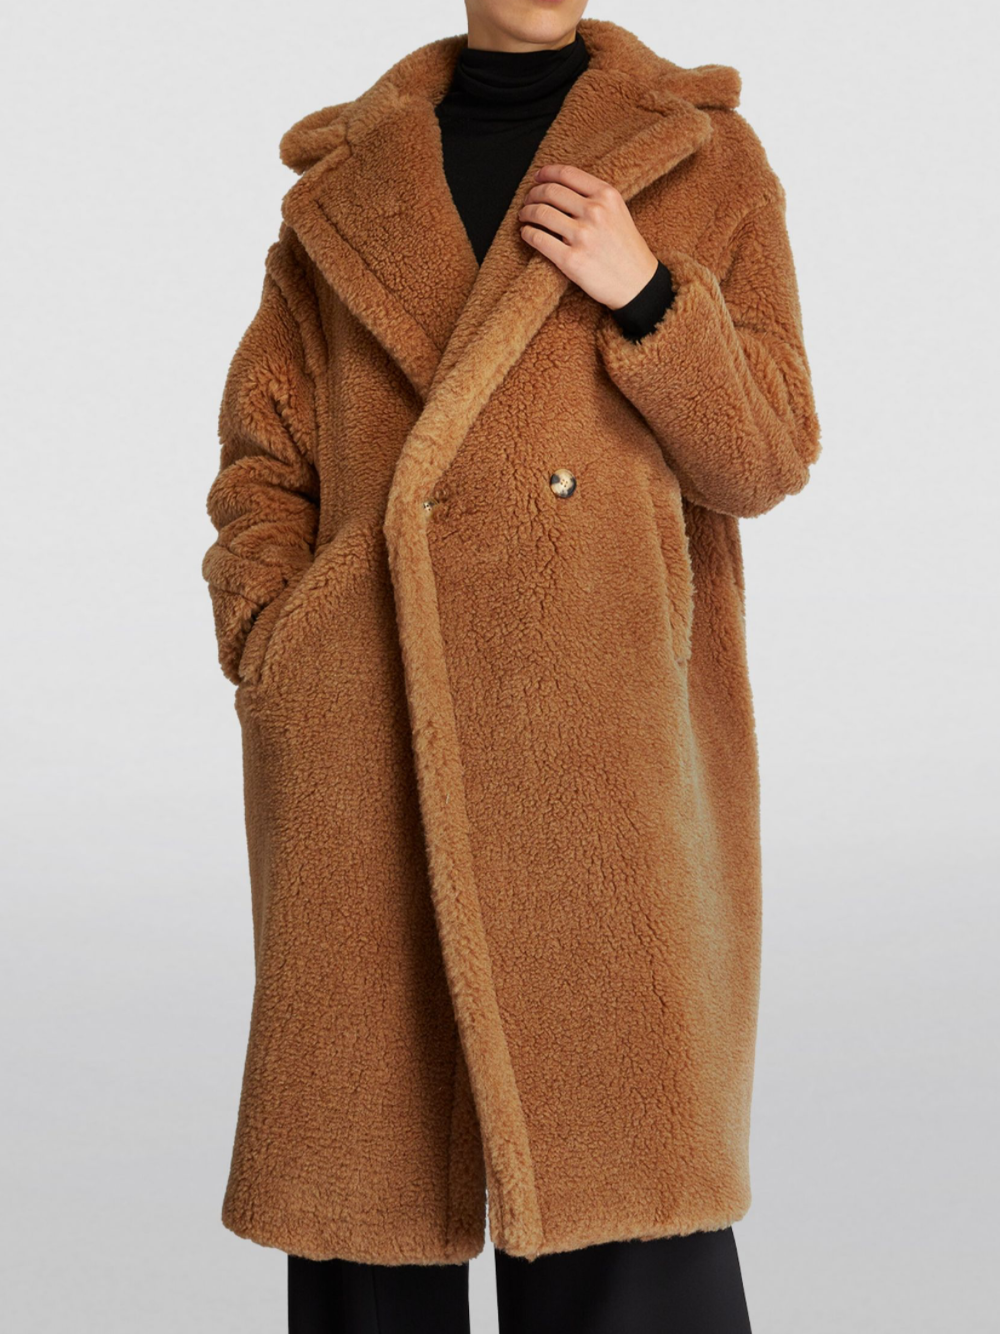 Max Mara Women's Teddy Bear Icon Coat